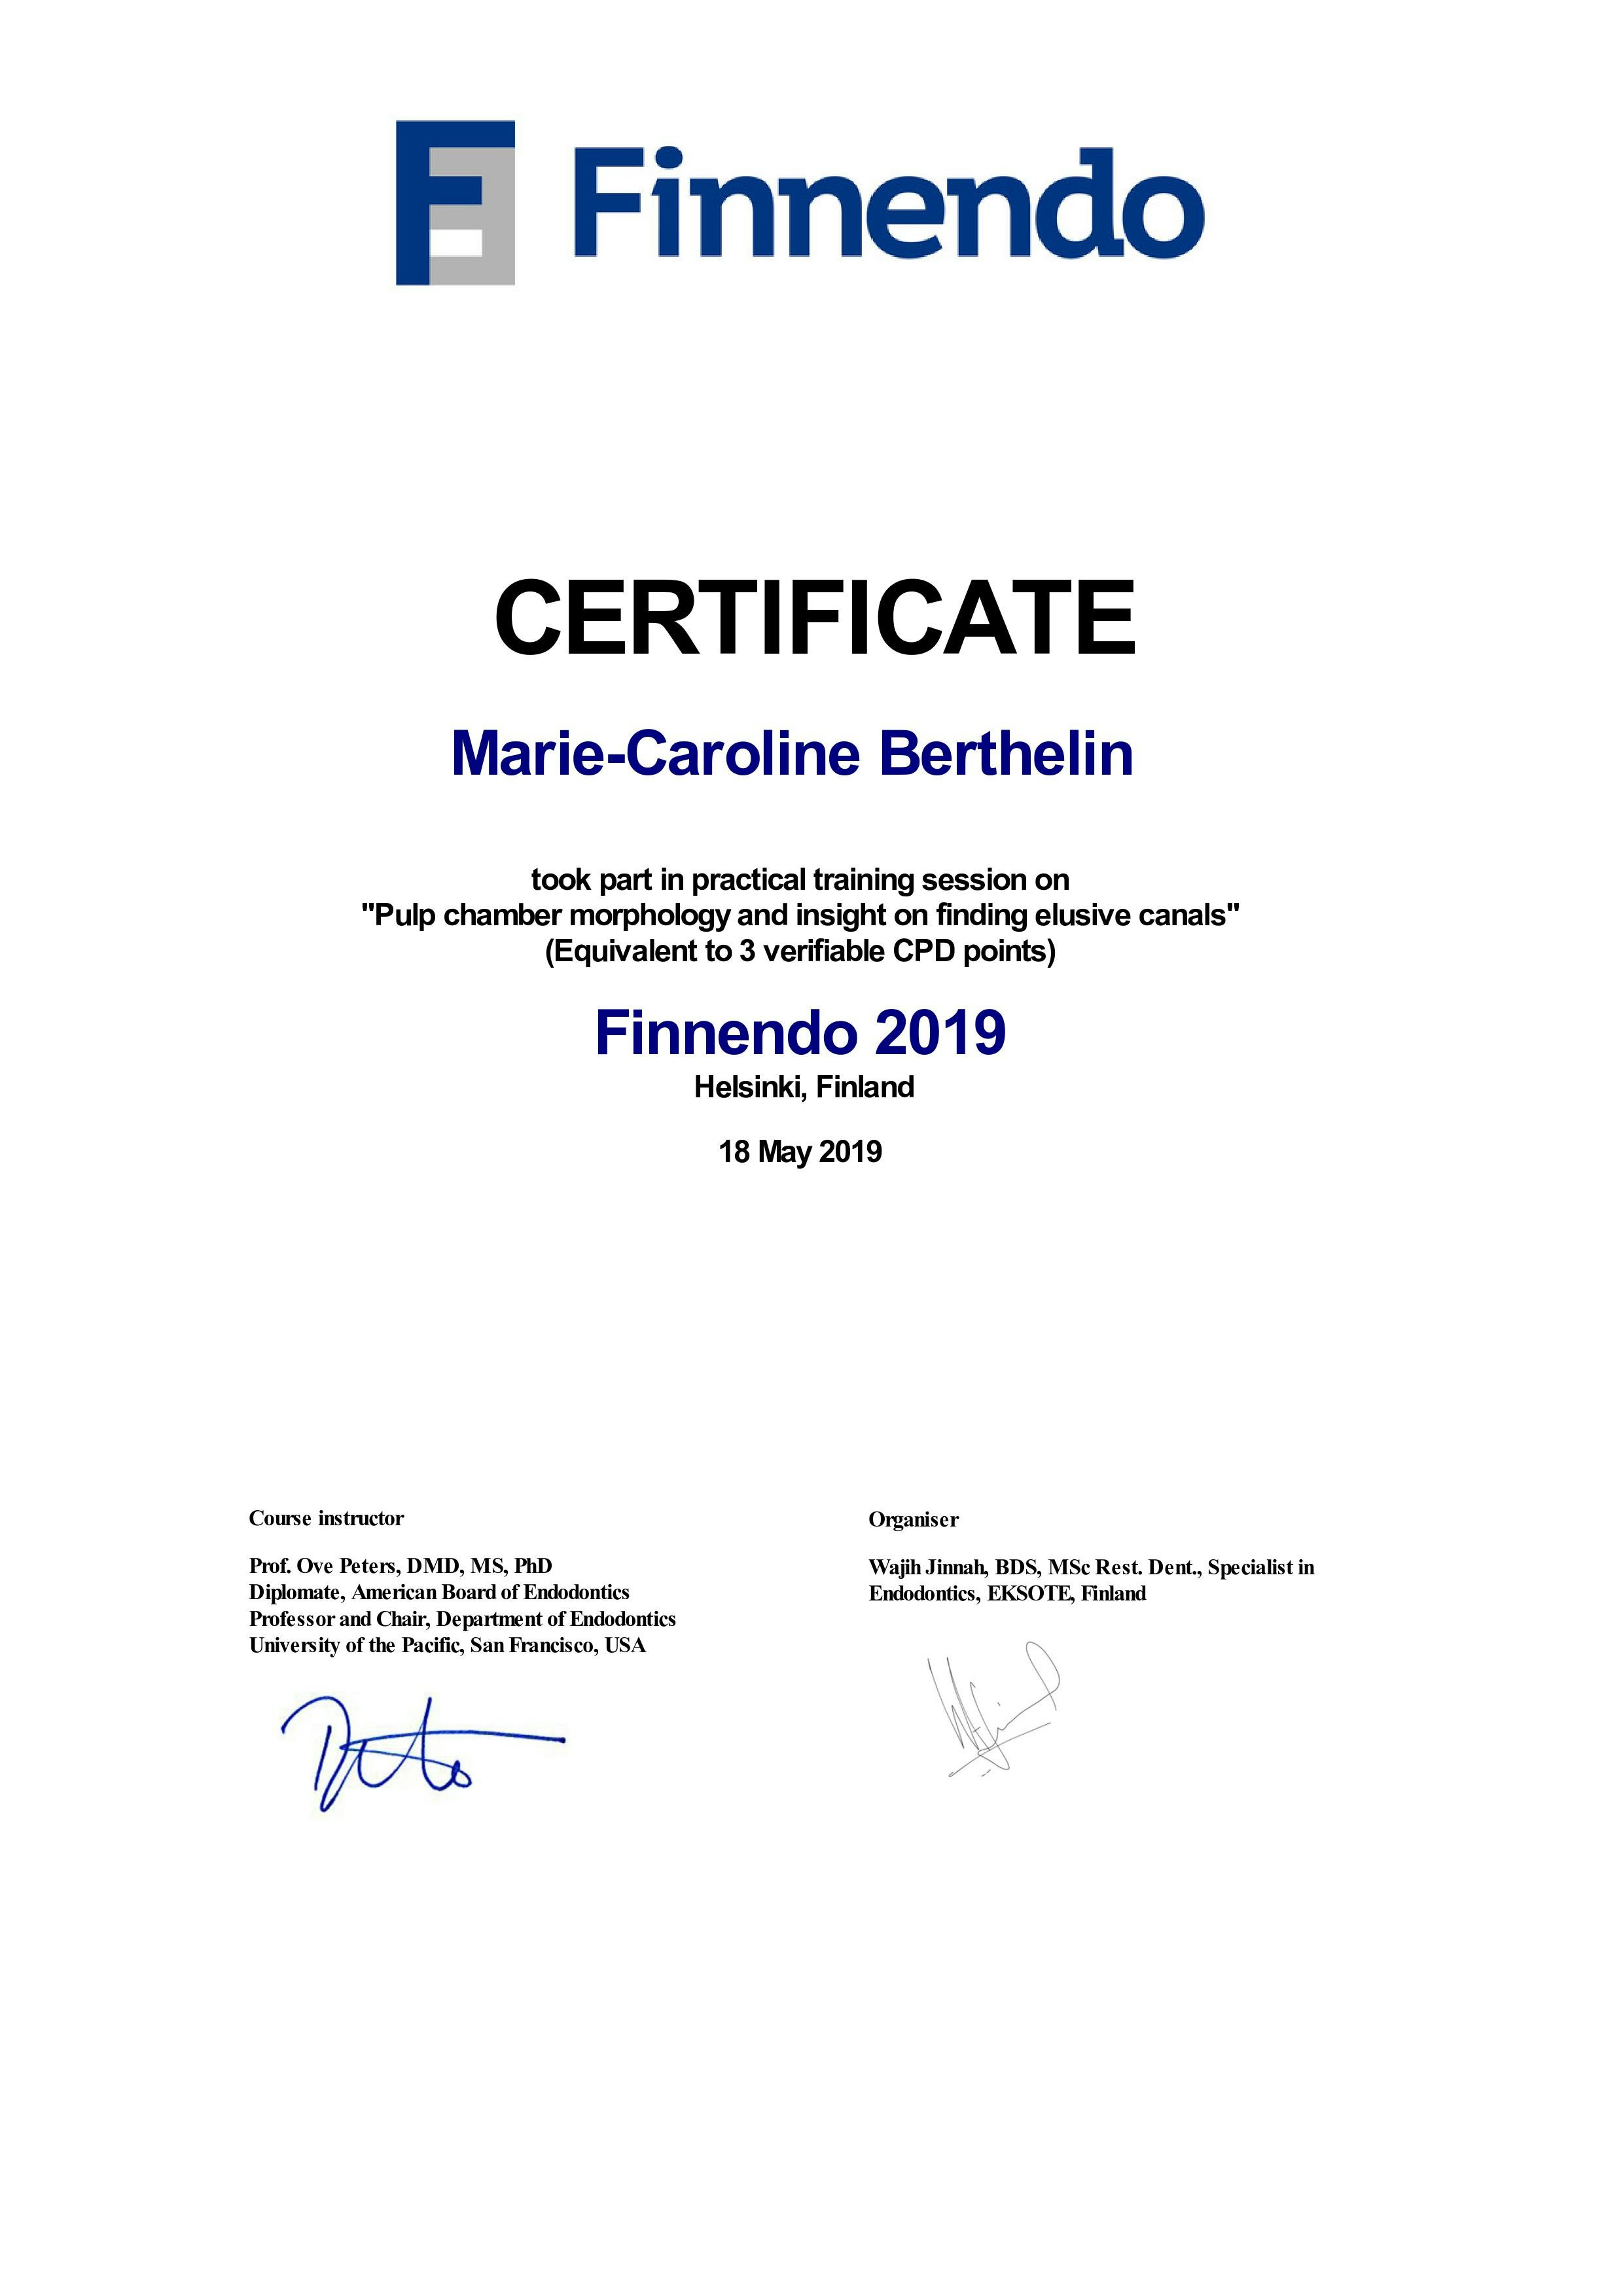 Finnendo Certificate